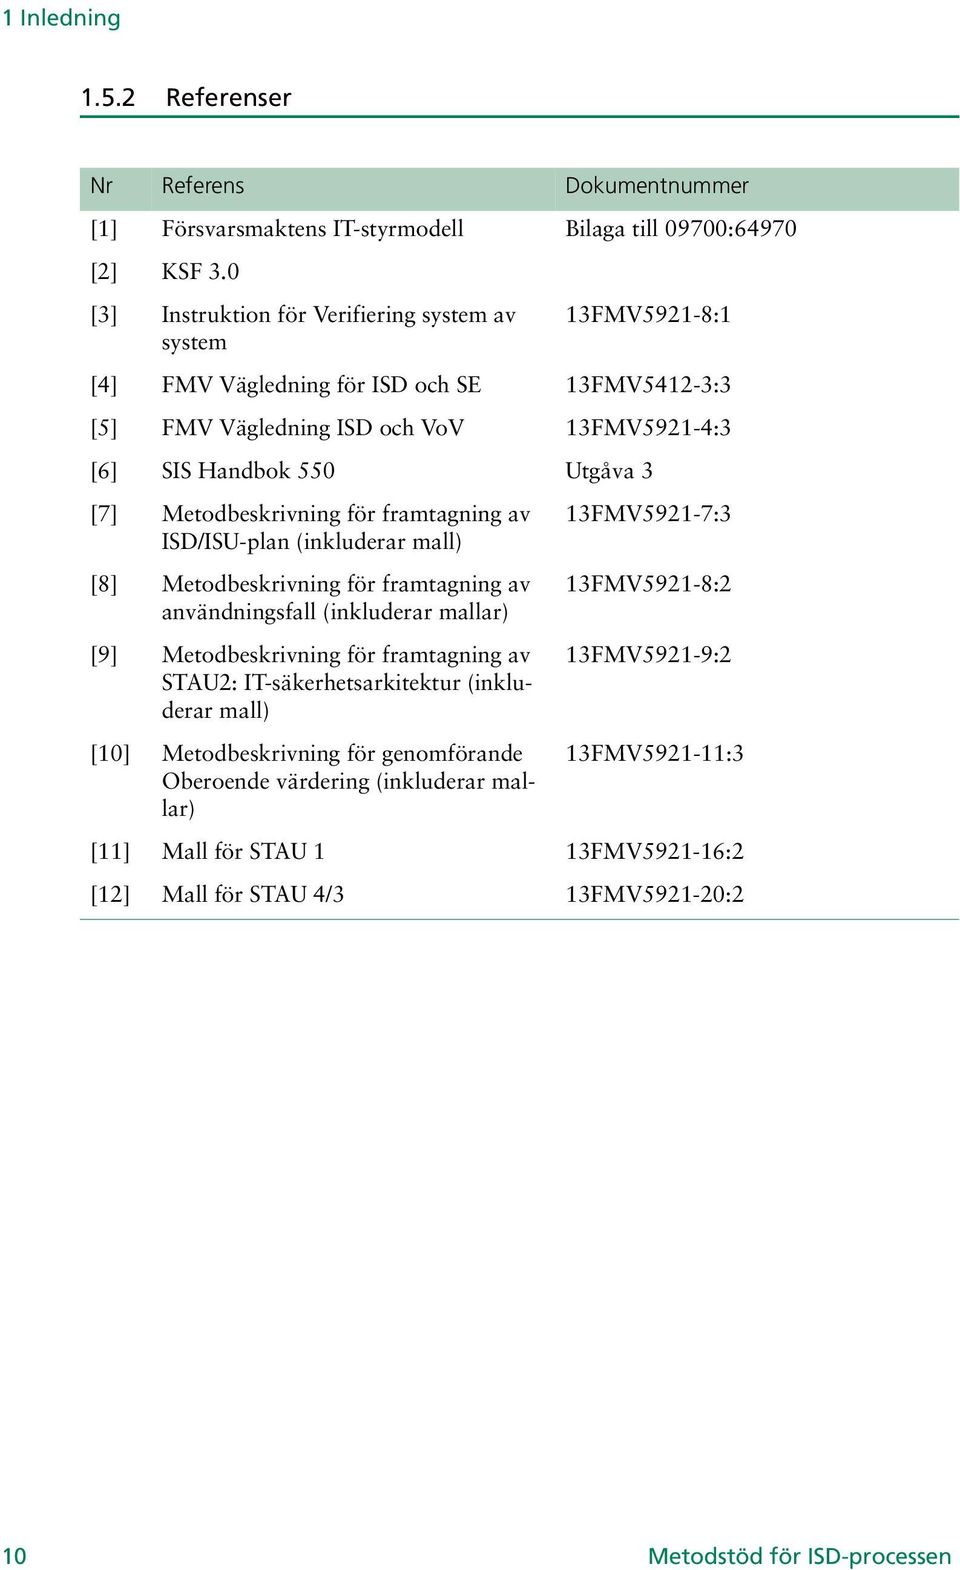 Metodbeskrivning för framtagning av ISD/ISU-plan (inkluderar mall) [8] Metodbeskrivning för framtagning av användningsfall (inkluderar mallar) [9] Metodbeskrivning för framtagning av STAU2: